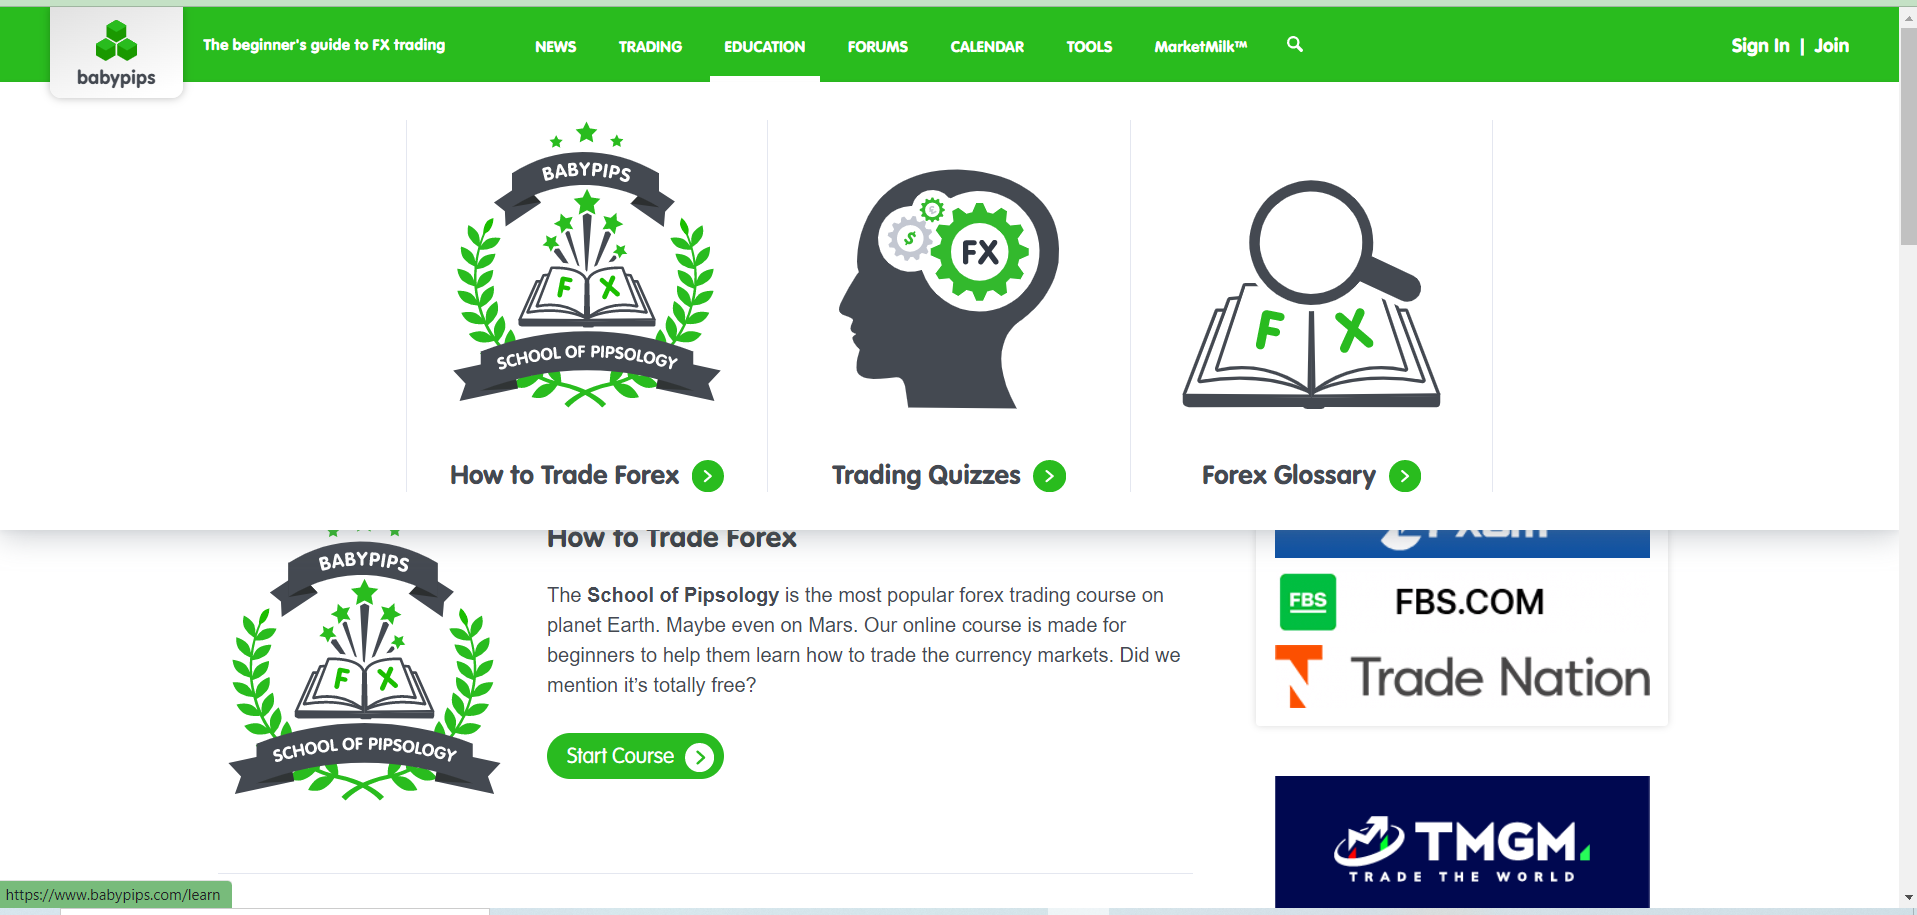 แนะนำแนวทางในการเรียนรู้และการพัฒนาตัวเองสำหรับเทรดเดอร์มือใหม่ — Trader  Sai Mour (Tsm)